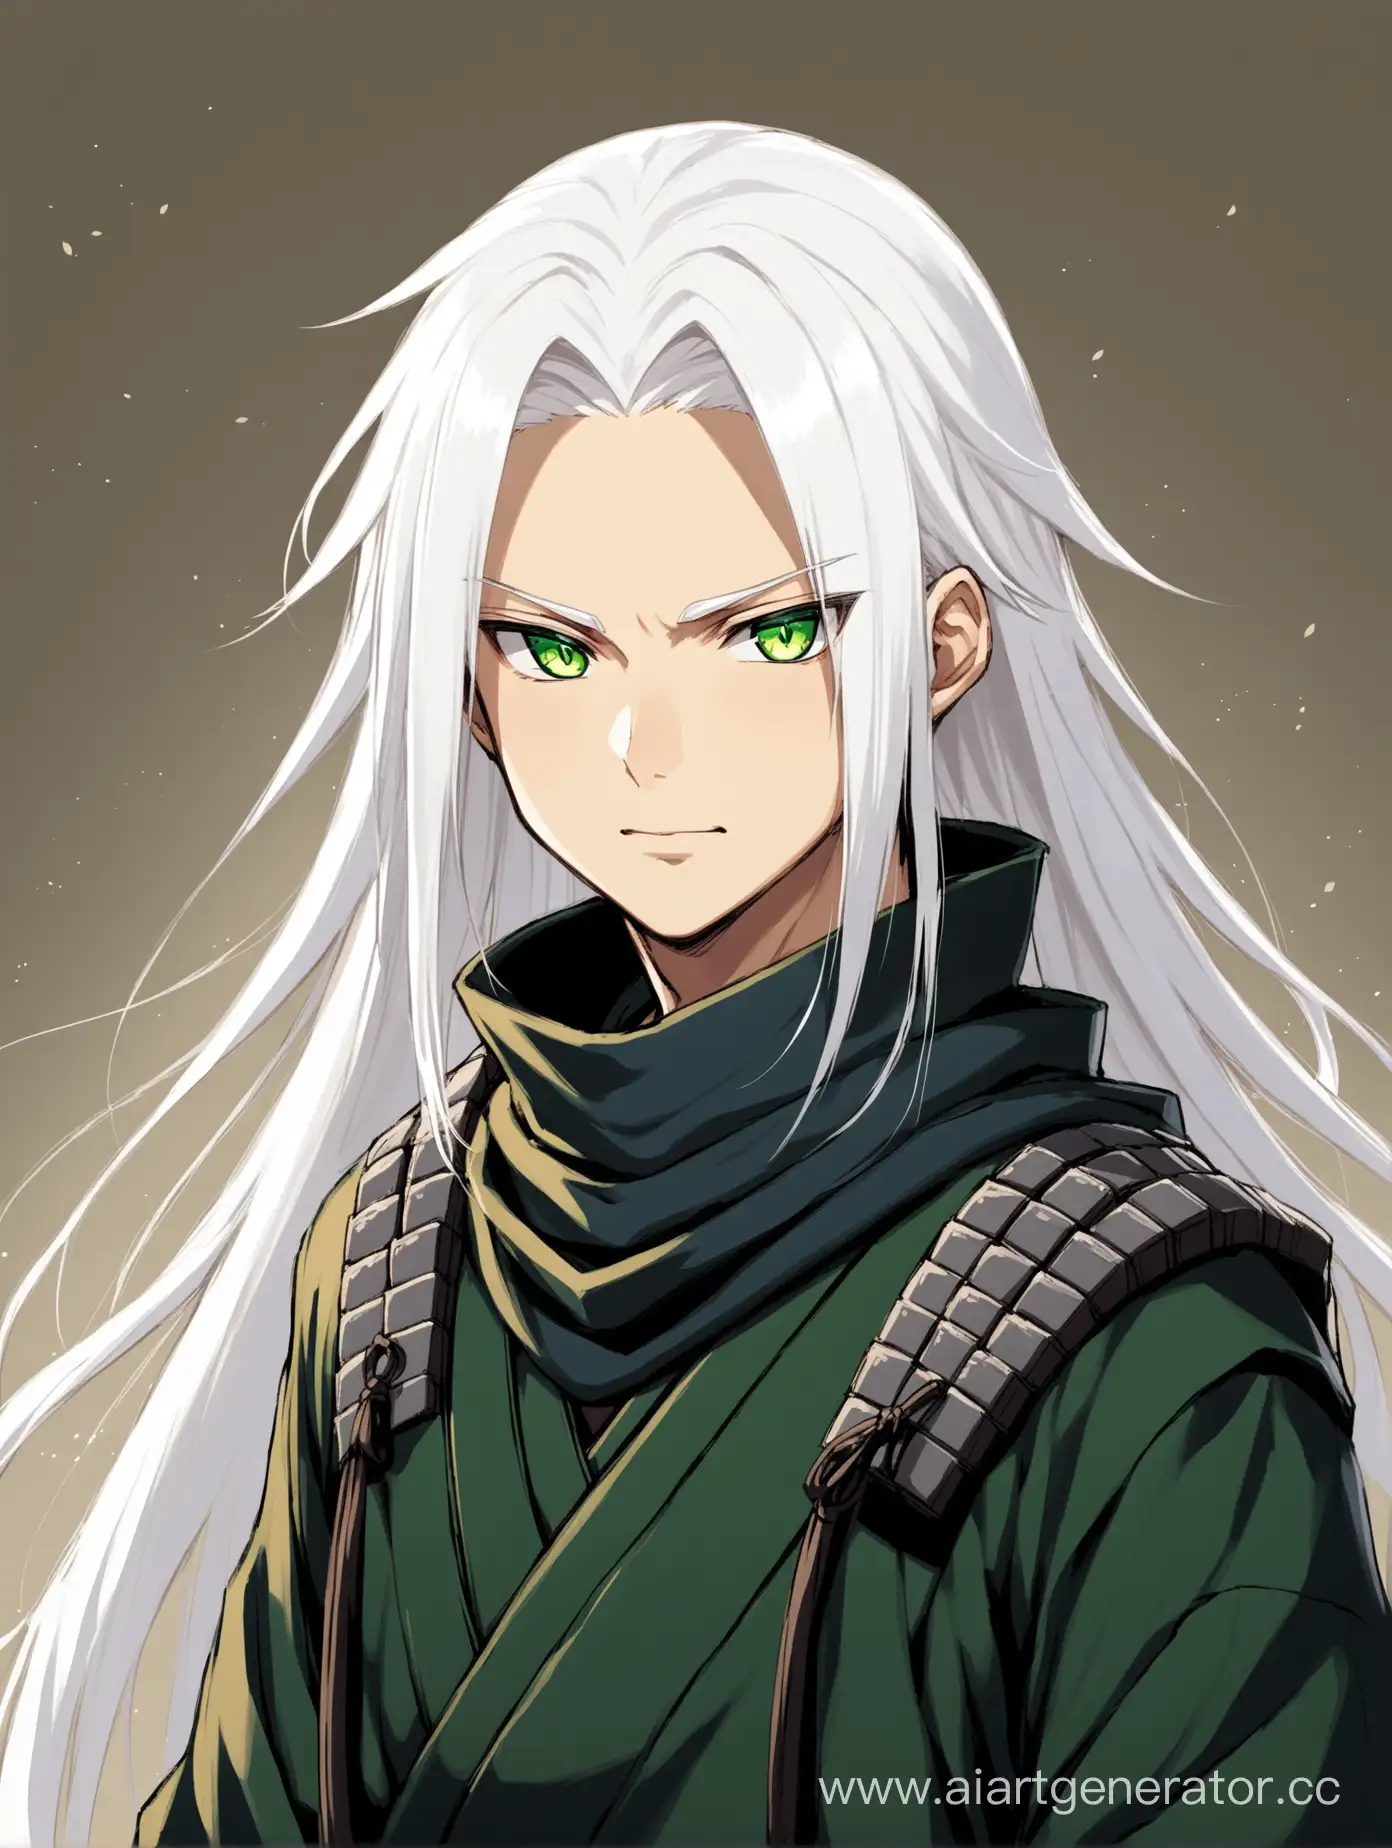 long white hair, shinobi boy with green eyes, son of Kimimaro Kaguya